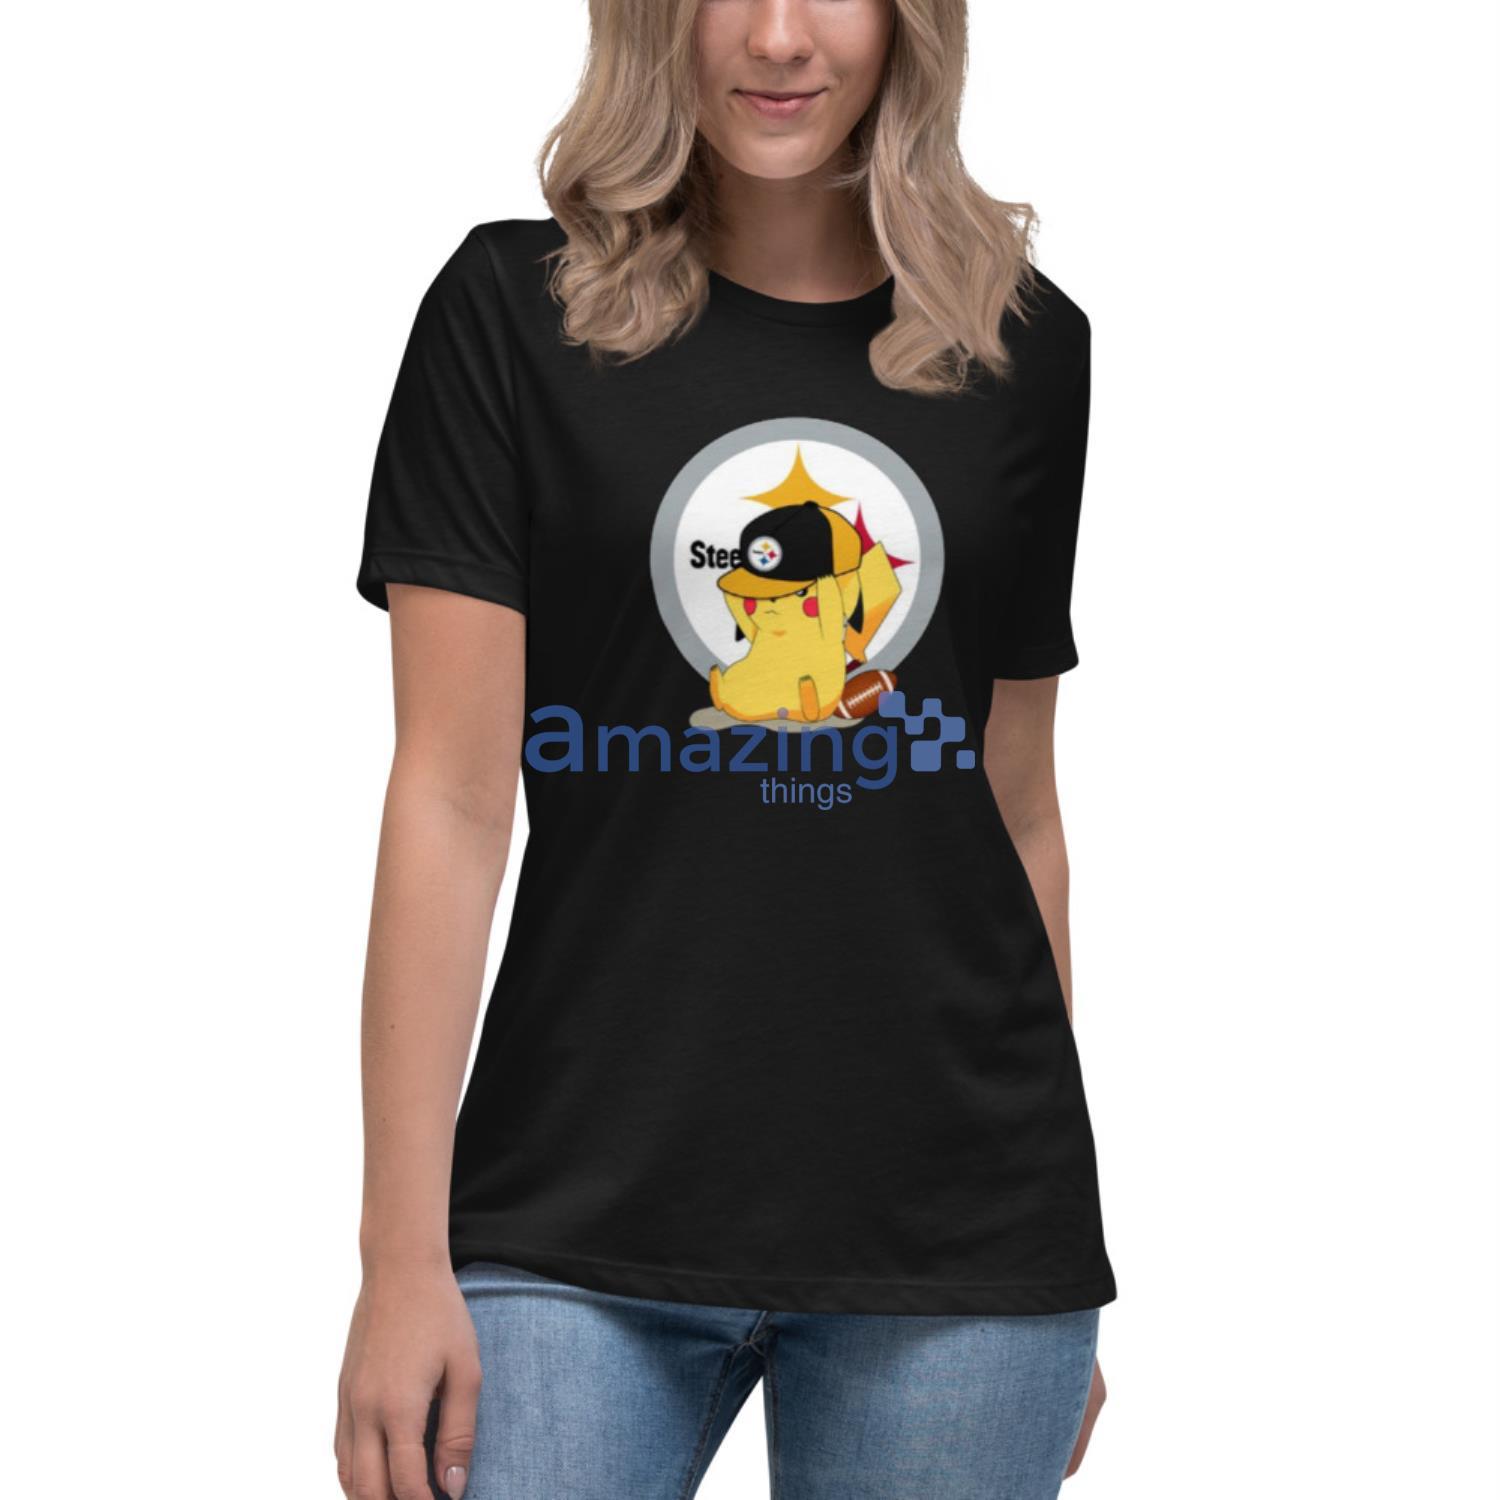 NFL Las Vegas Raiders Pokemon Pikachu T-Shirt, NFL Graphic Tee for